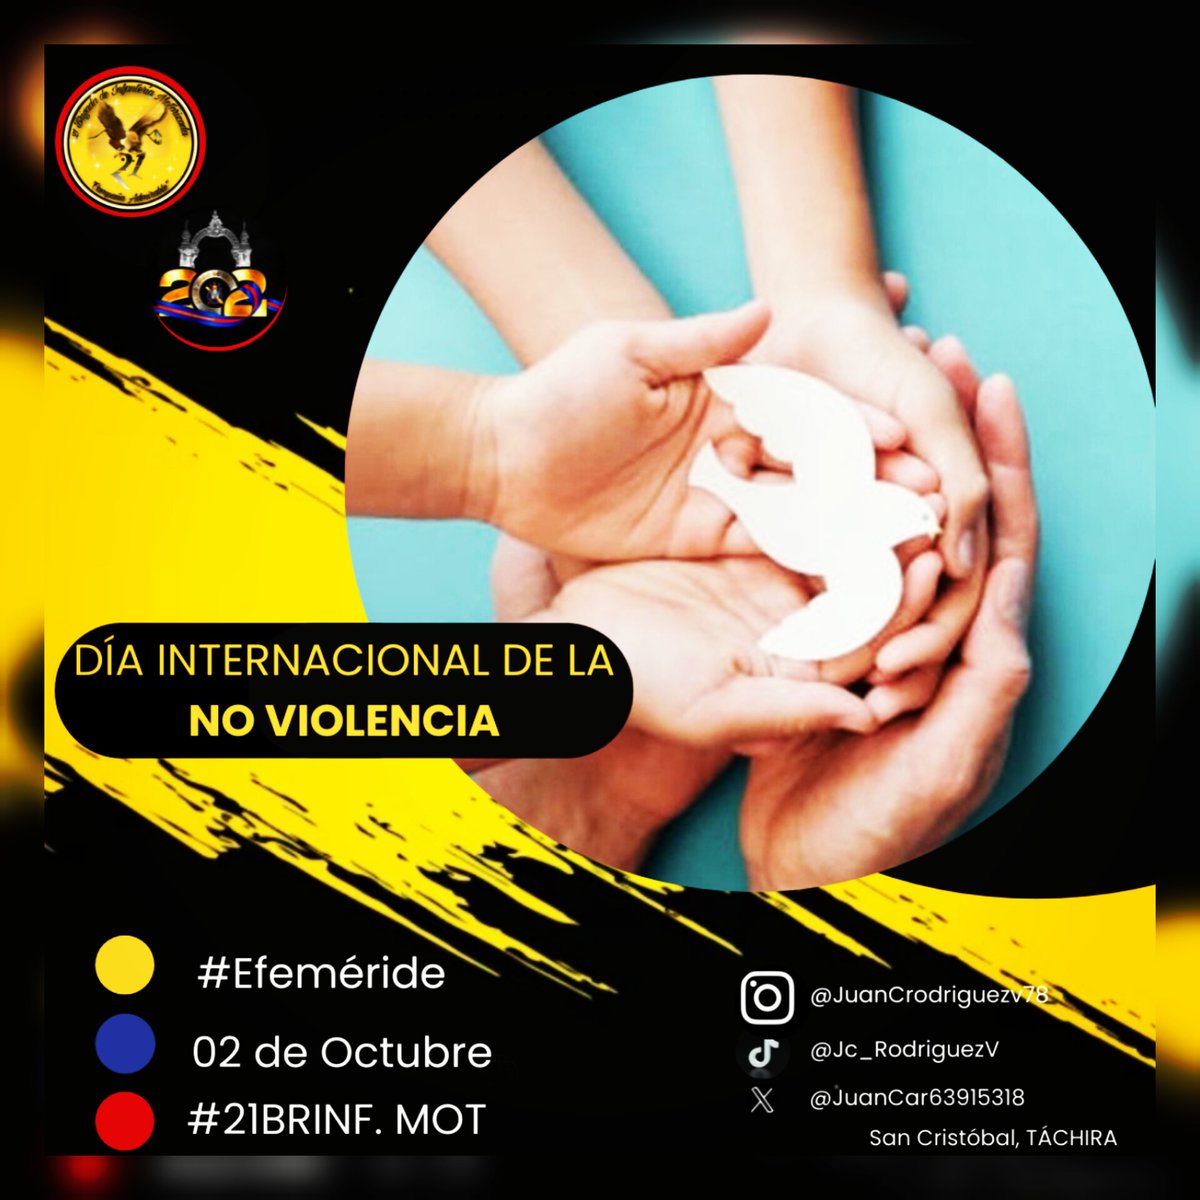 El Día Internacional de la No Violencia tiene como objetivo difundir la conciencia sobre la filosofía y la estrategia de la no violencia a través de la educación y la conciencia pública.

#venezuelabella
#MiVidaxlaPATRIA
#FANBESSOBERANIA
#21BRIGADADEINFANTERÍA